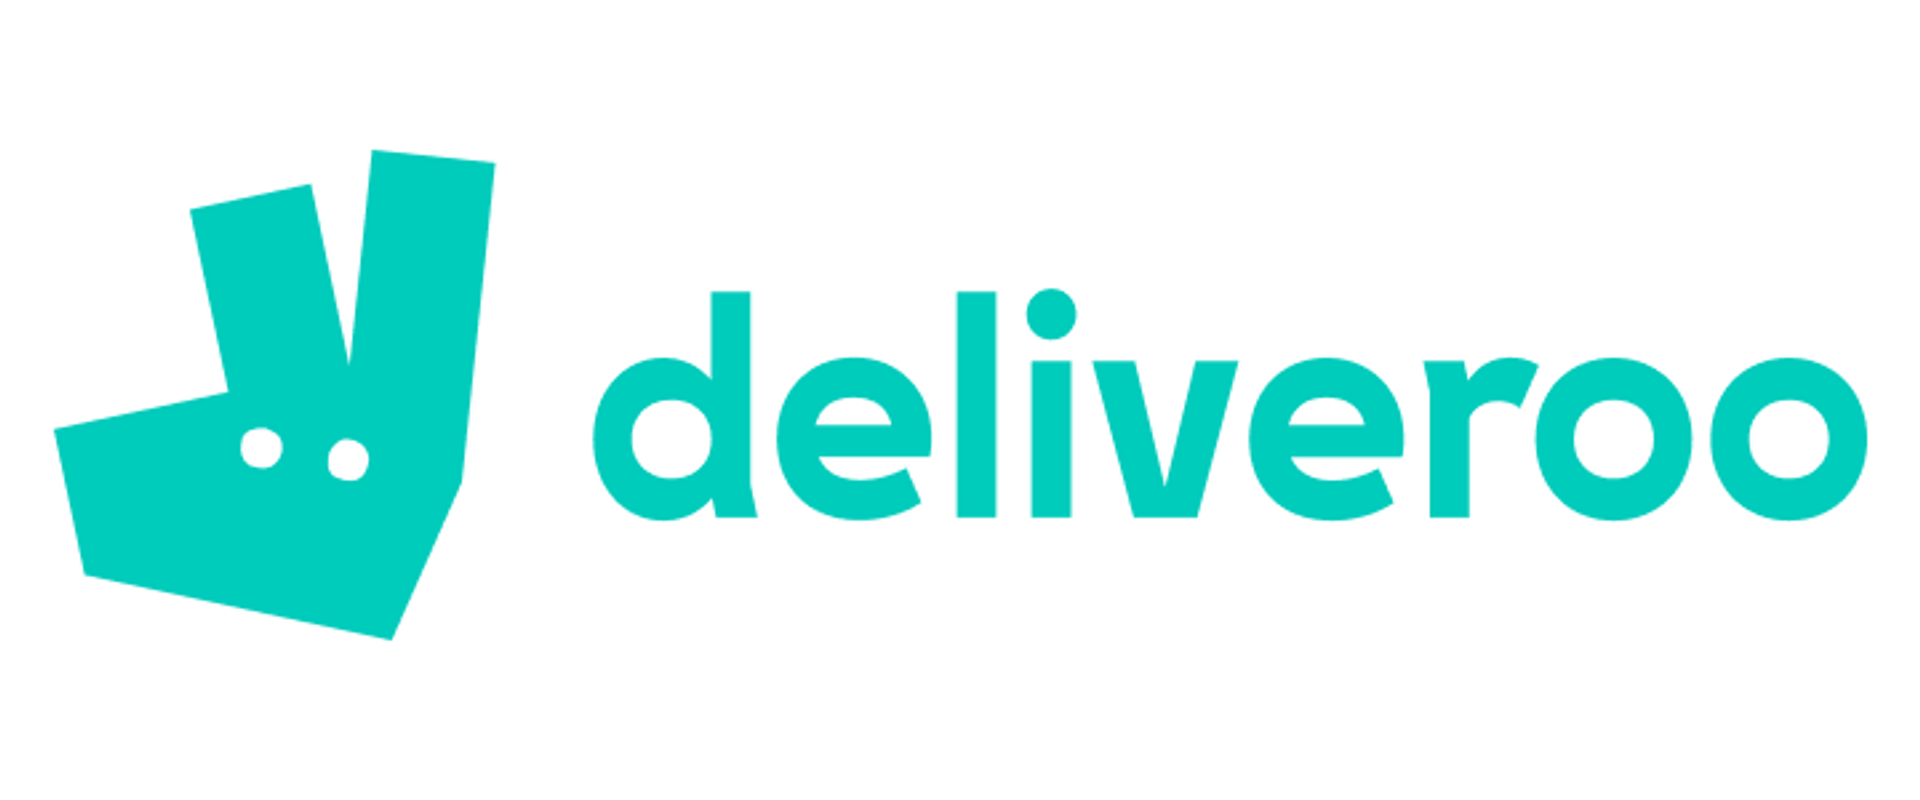 deliveroo logo